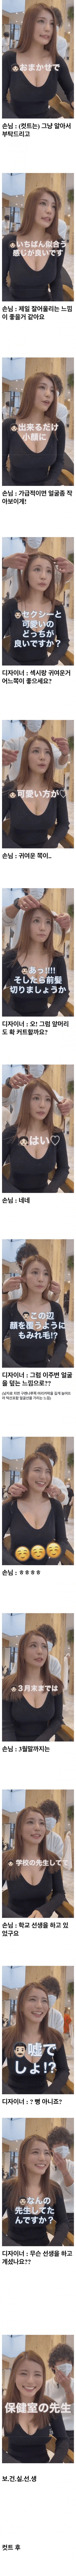 ㅇㅎ)머리 커트하러 온 일본 여교사.jpg